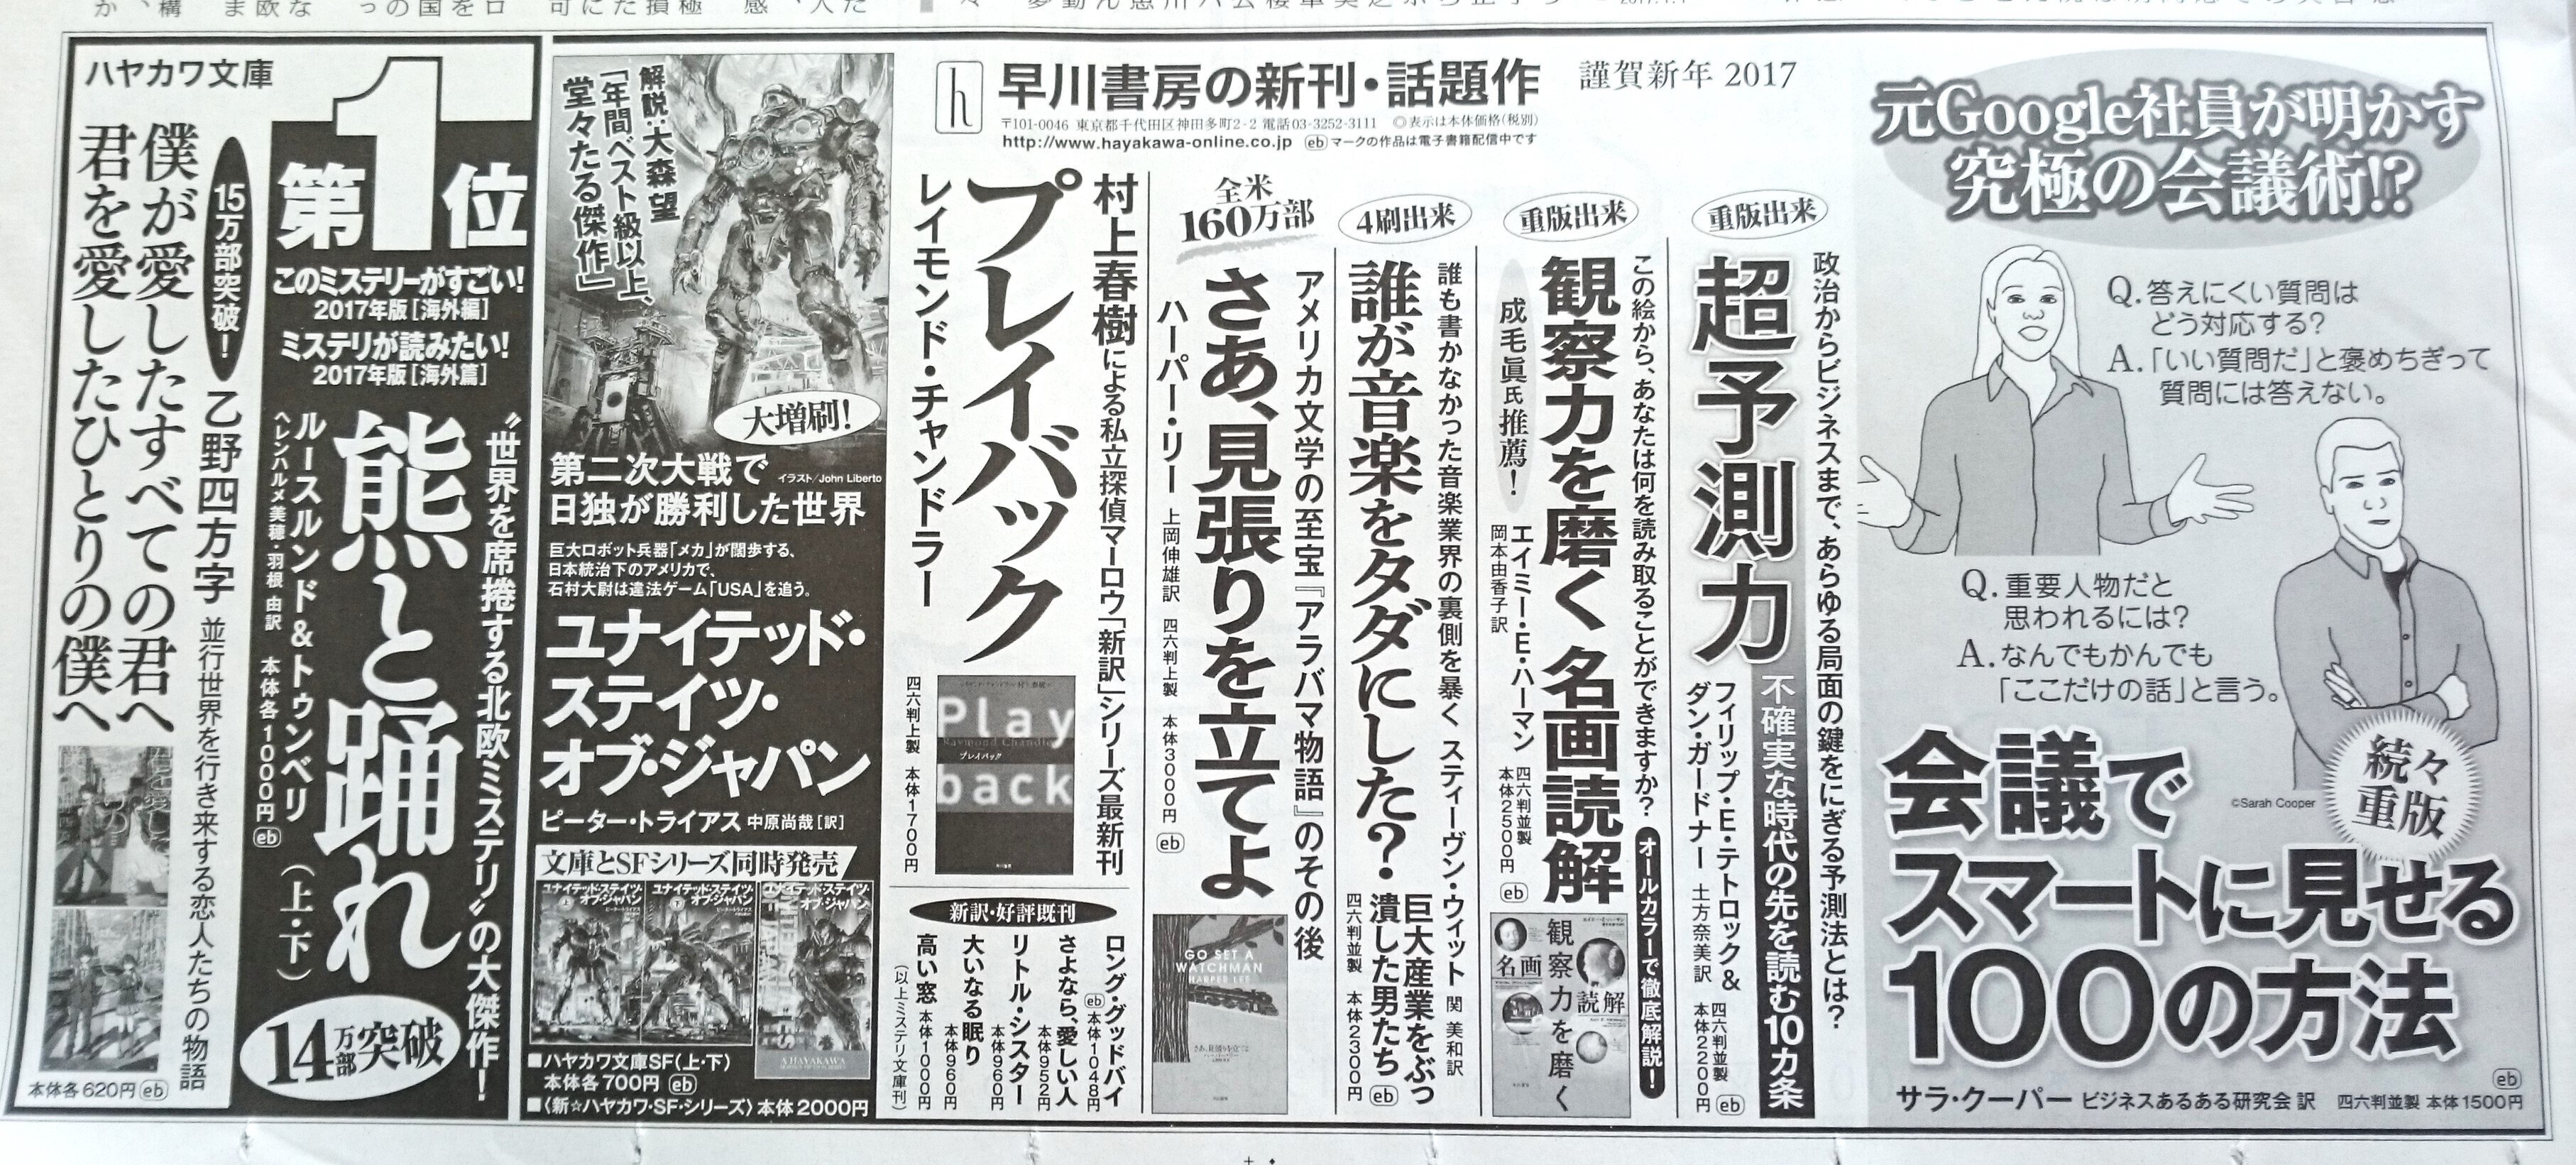 正月新聞広告のマニアックな世界 2017年｜田中裕士